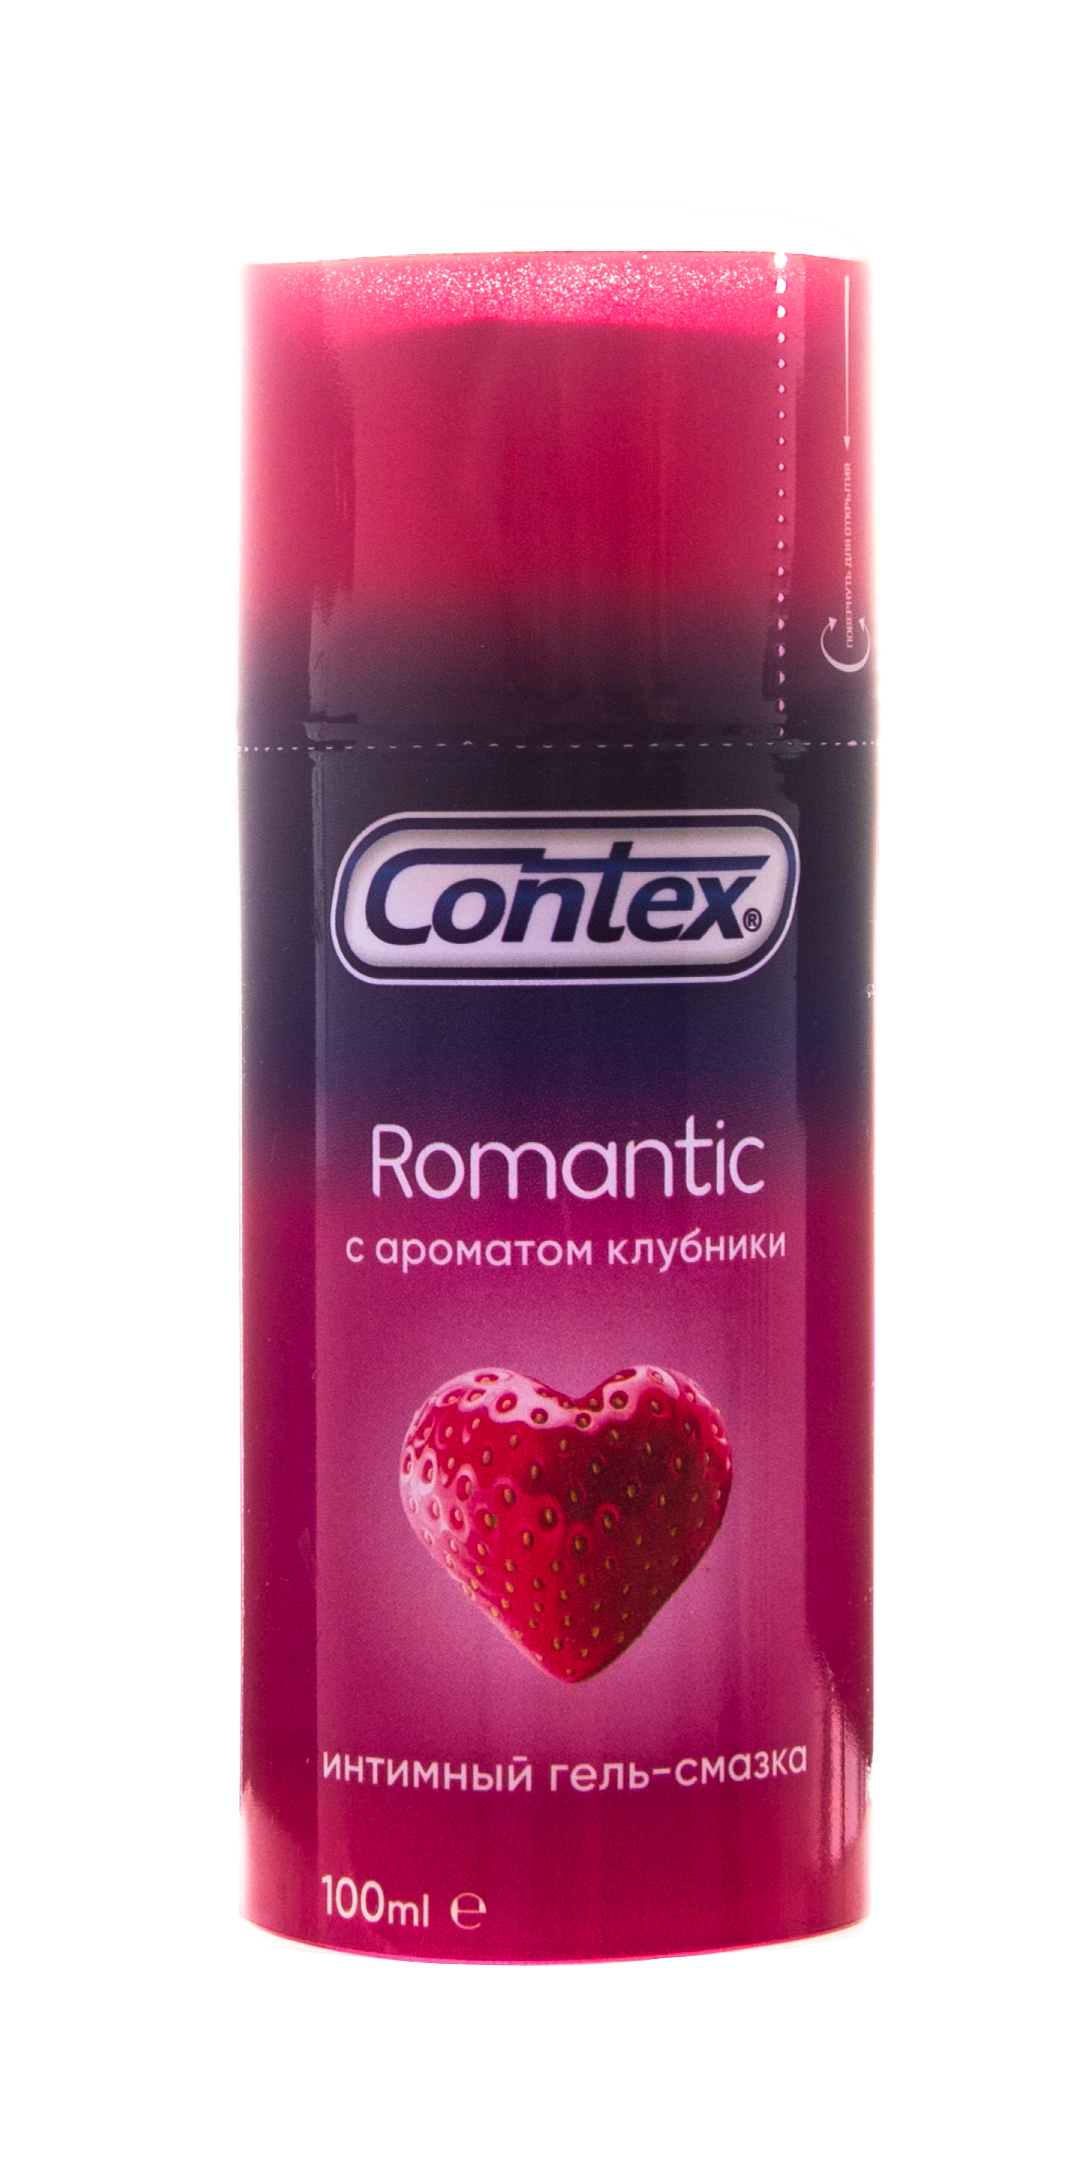 Contex Гель-смазка Romantic ароматизированный, 100 мл (Contex, Гель-смазка) цена и фото